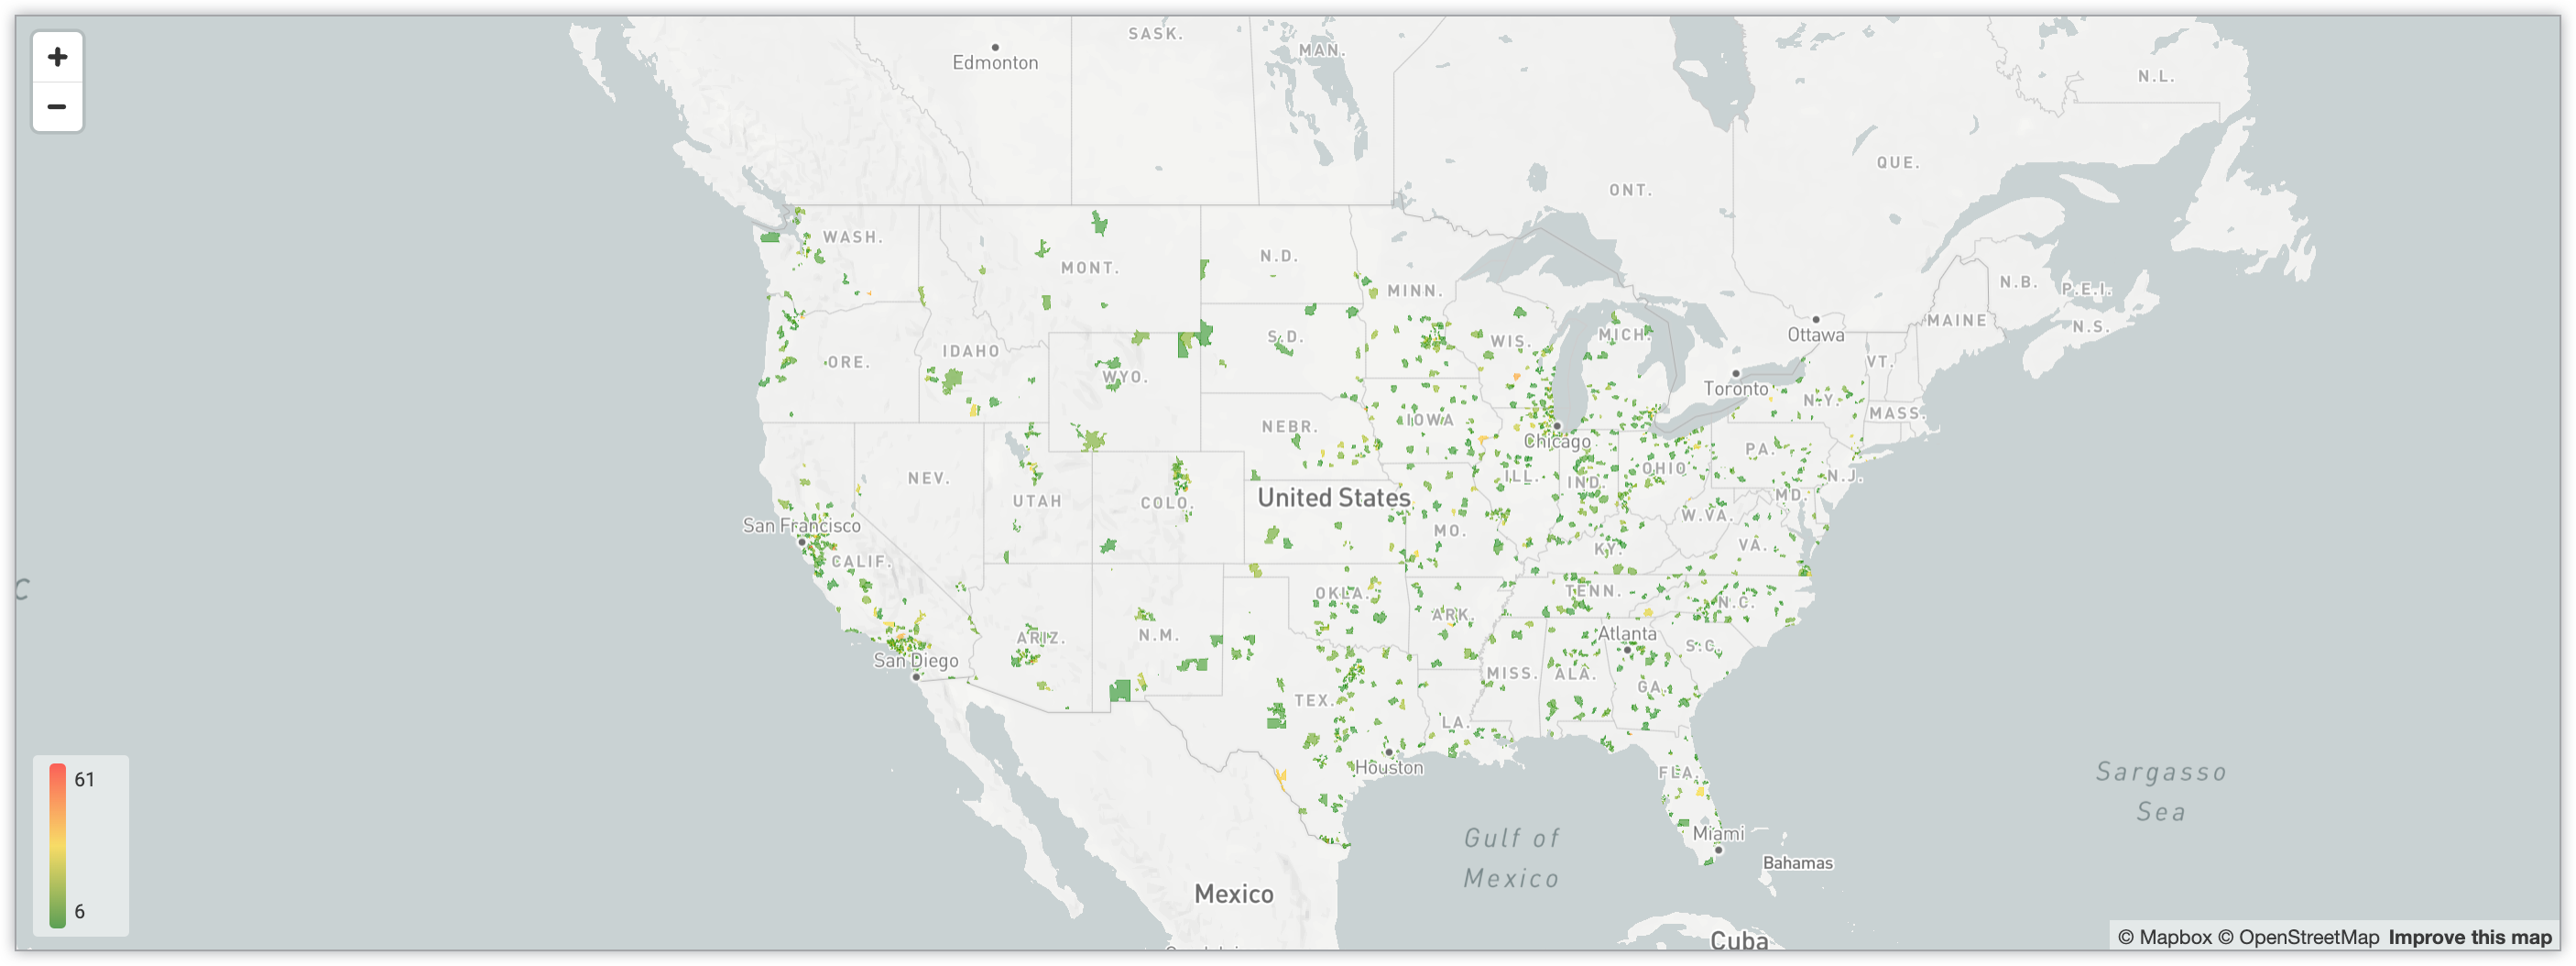 グラデーションのあるカラーコーディング システムによって米国の郵便番号ごとのユーザー数を示すインタラクティブな地図。